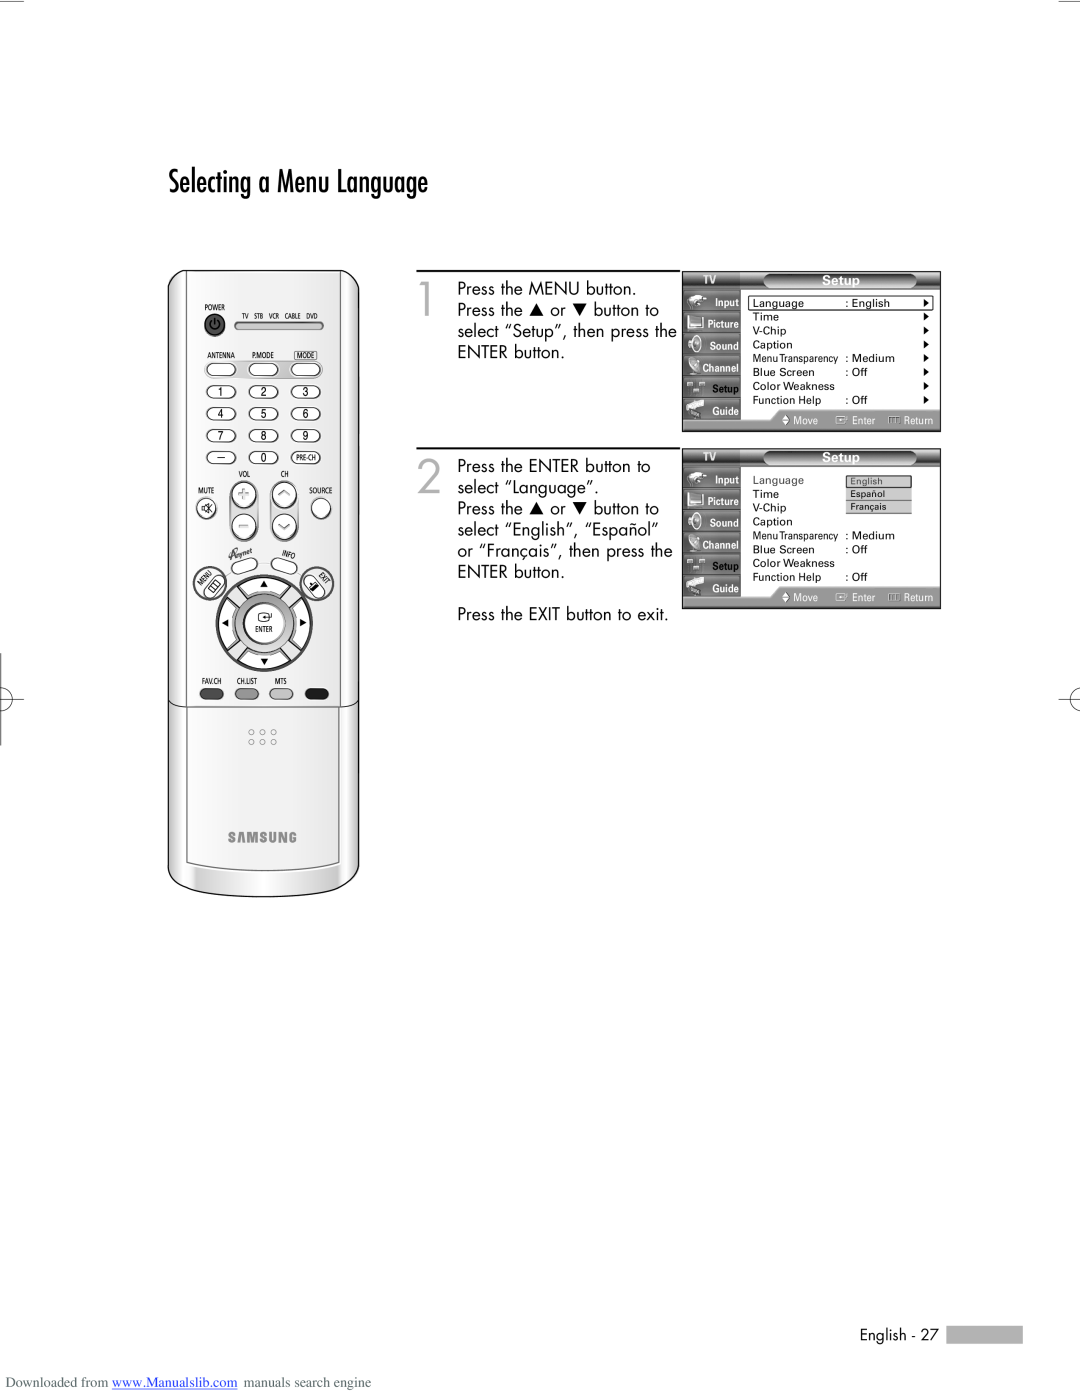 Samsung HL-R6156W, HL-R5656W, HL-R5056W manual Selecting a Menu Language 